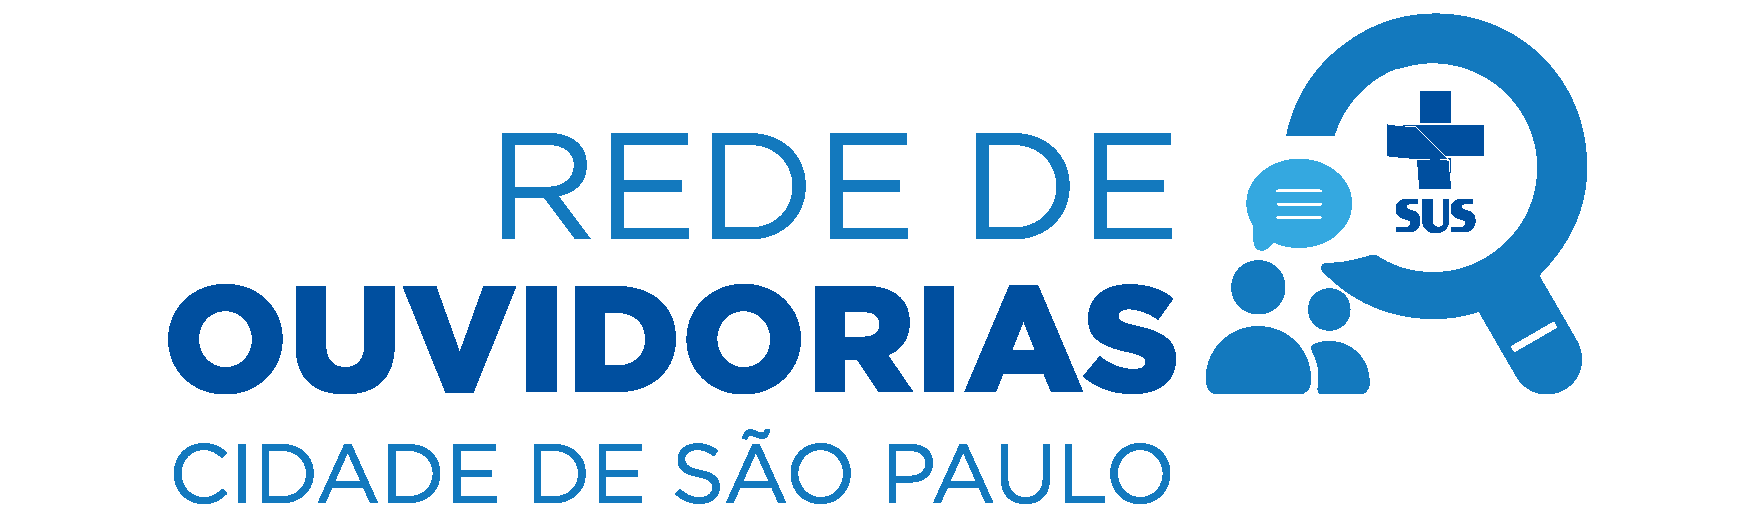 Logo da Ouvidoria: O texto em letras azuis diz: Rede de Ouvidorias Cidade de São Paulo. À esquerda, um ícone de uma lupa, com o logo do SUS no meio. Do lado direito da lupa, o ícone de dois avatares com um caixa de diálogo sobre suas cabeças.